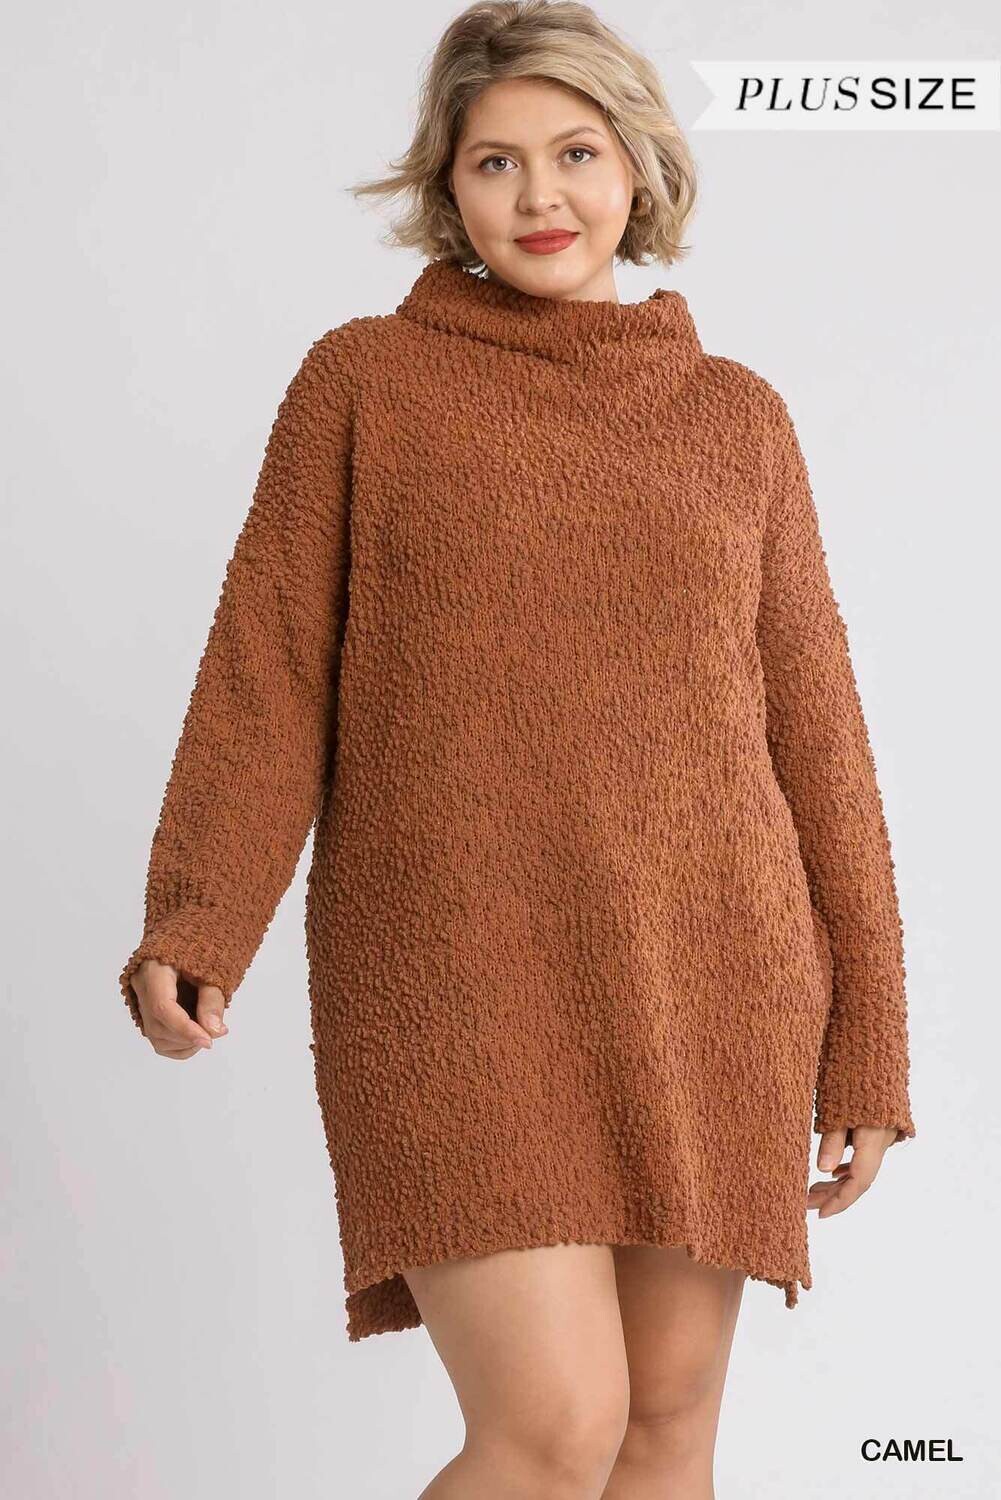 High Cowl Neck Boucl� Long Sleeve Sweater Dress